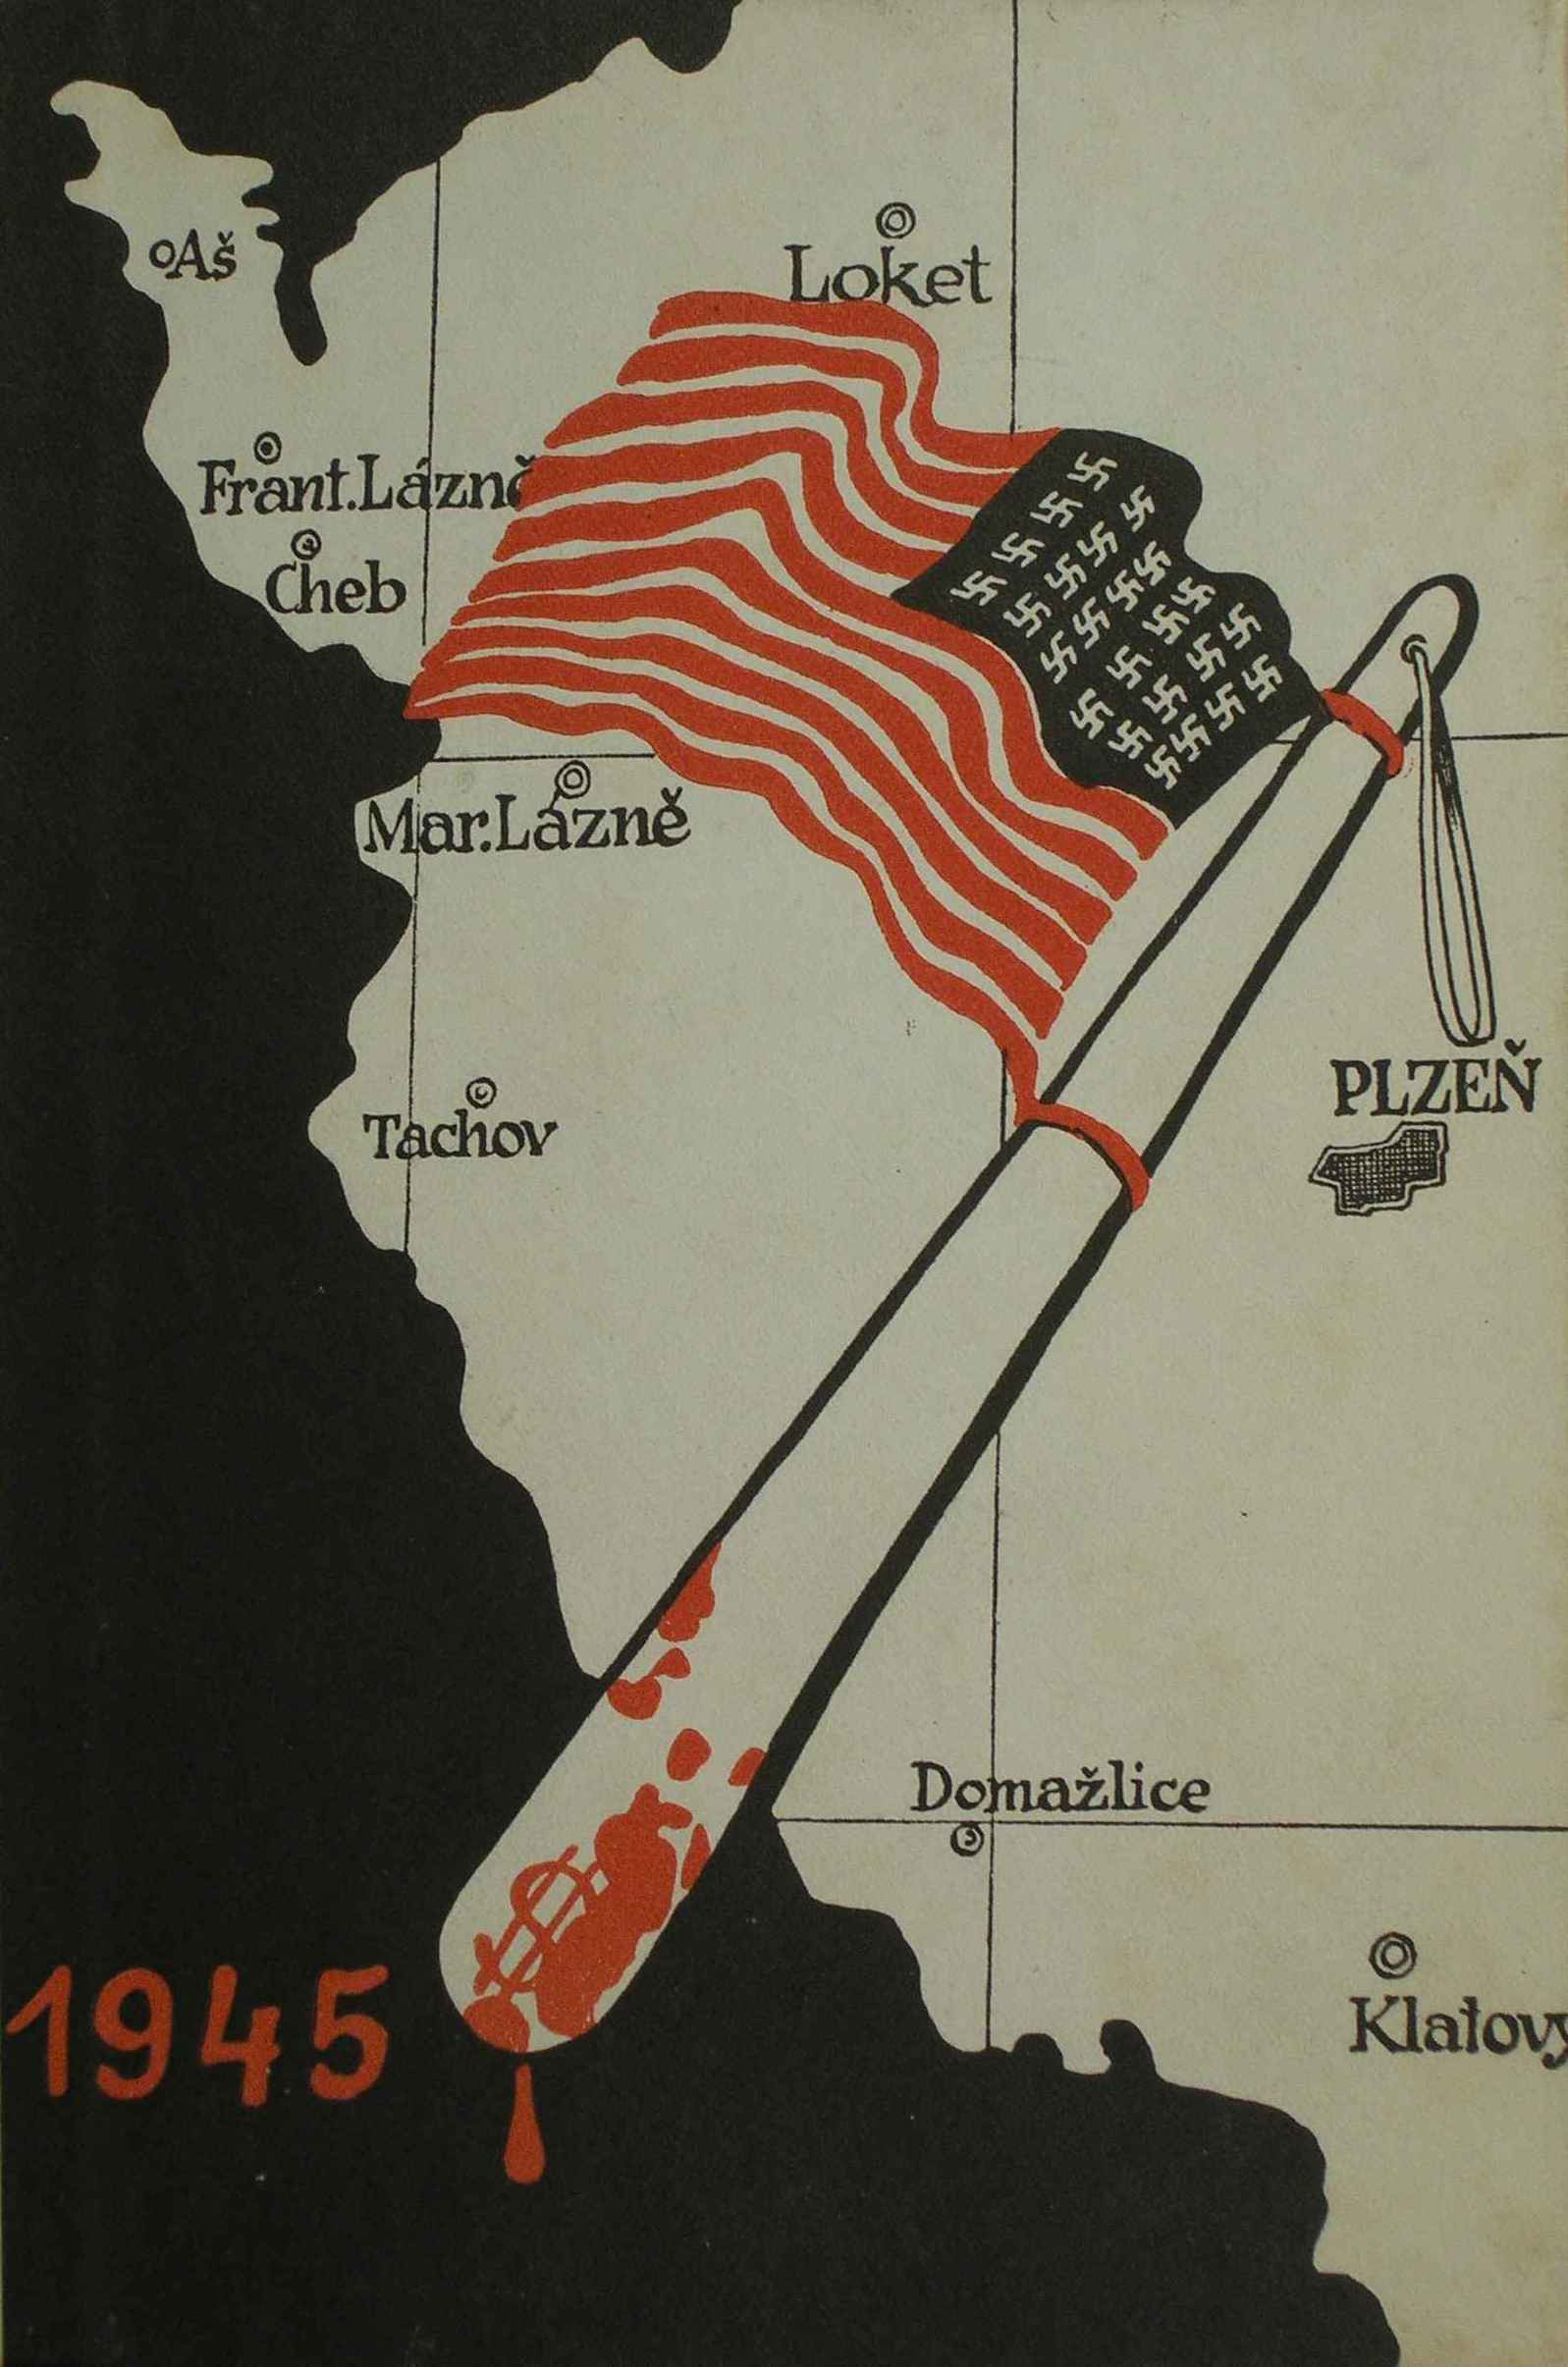 Američané v západních Čechách v roce 1945